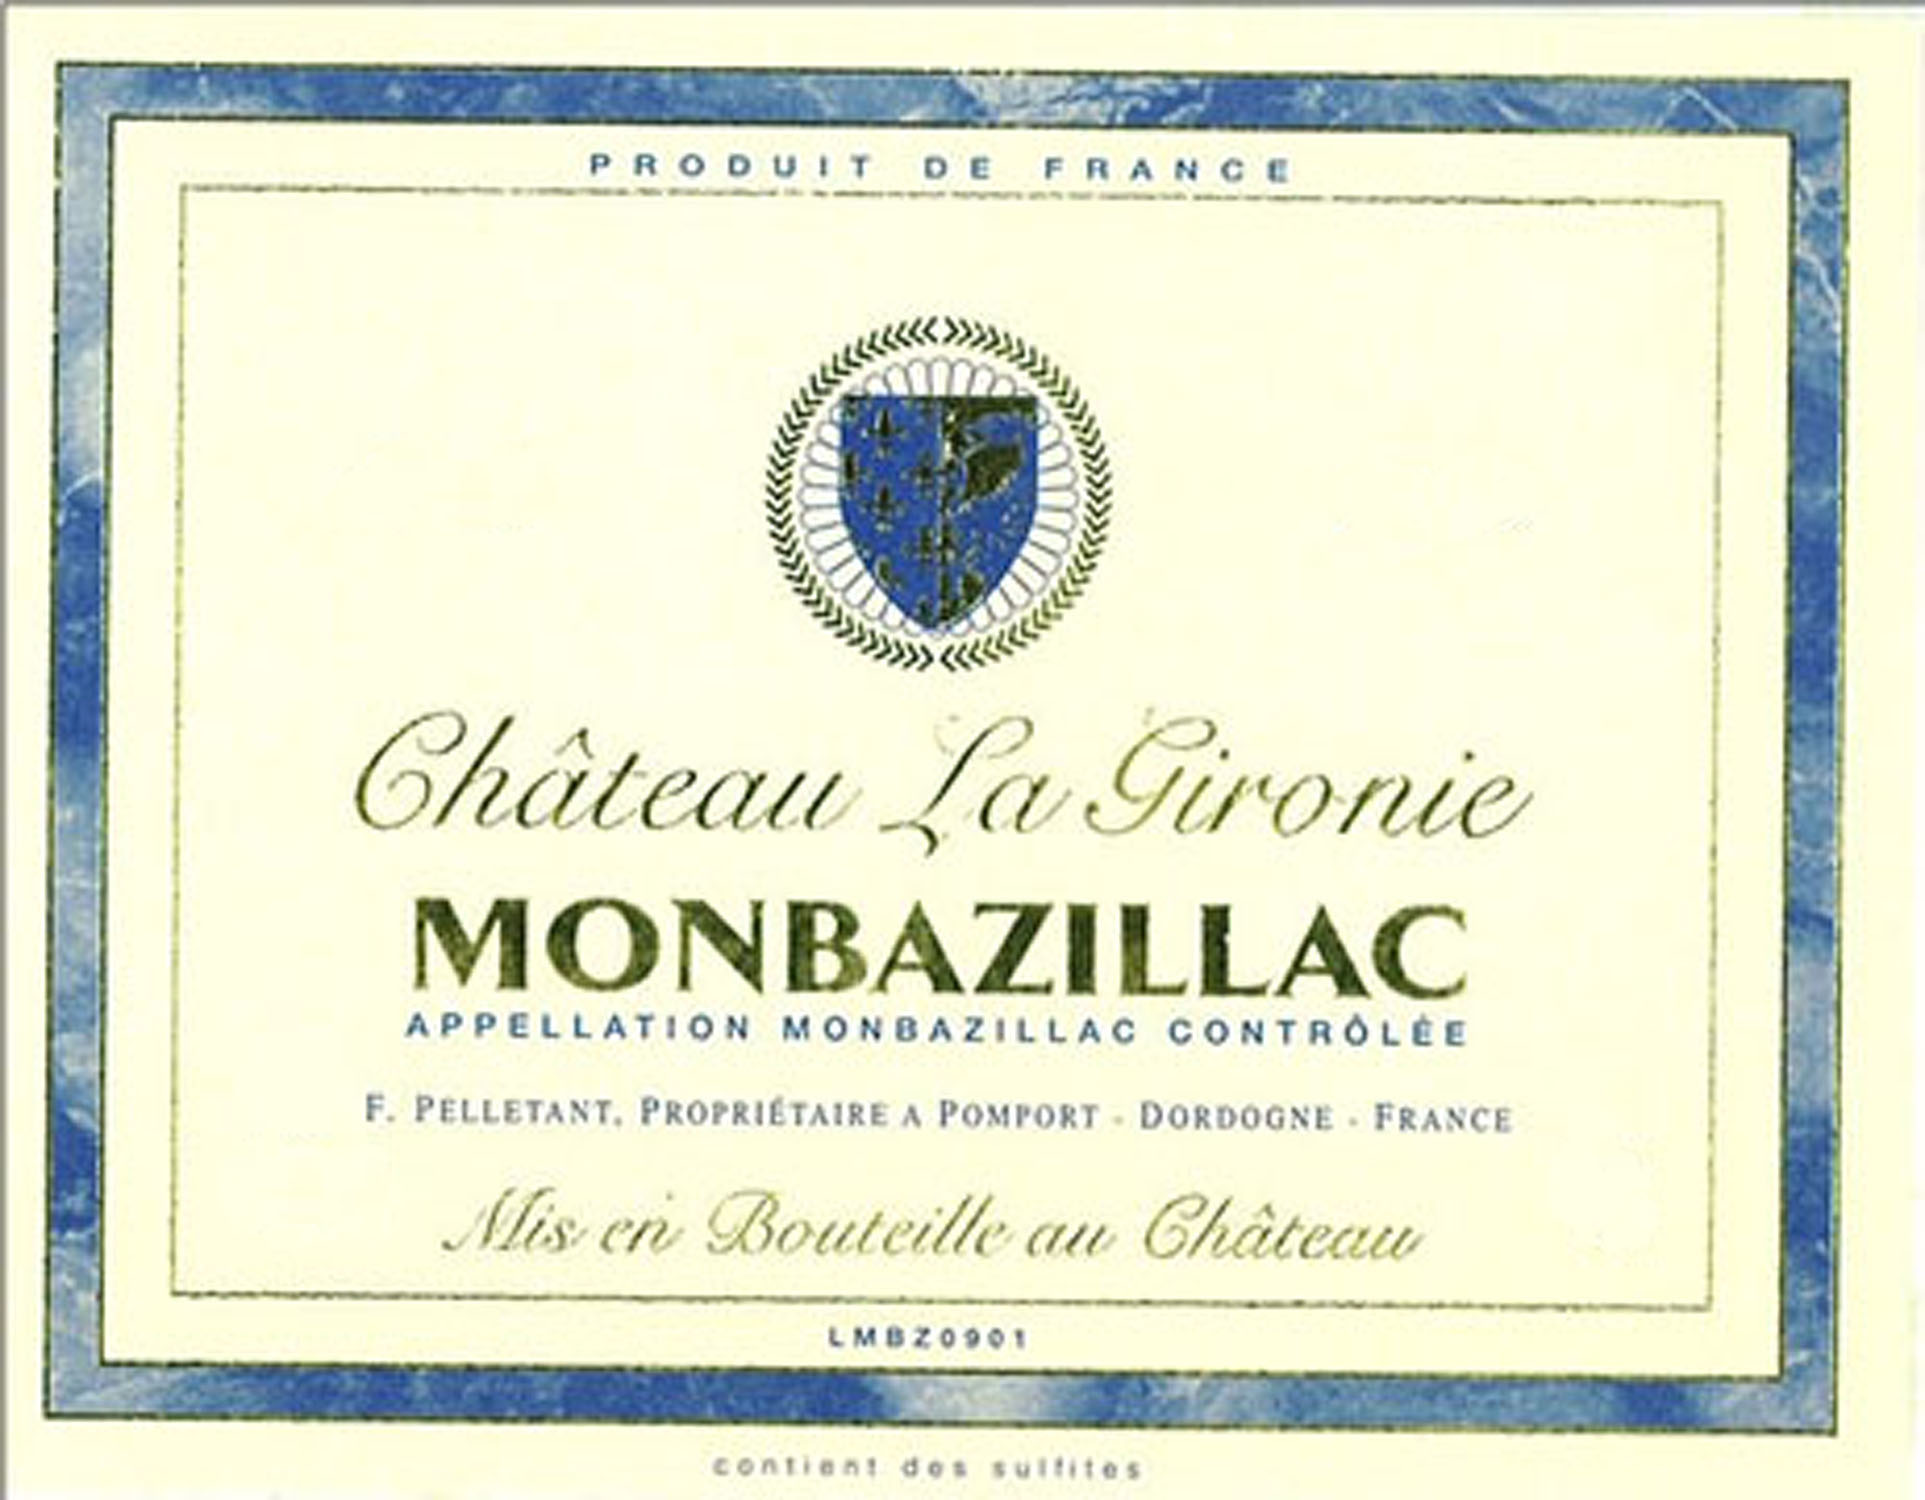 Chateau La Gironie Monbazillac label